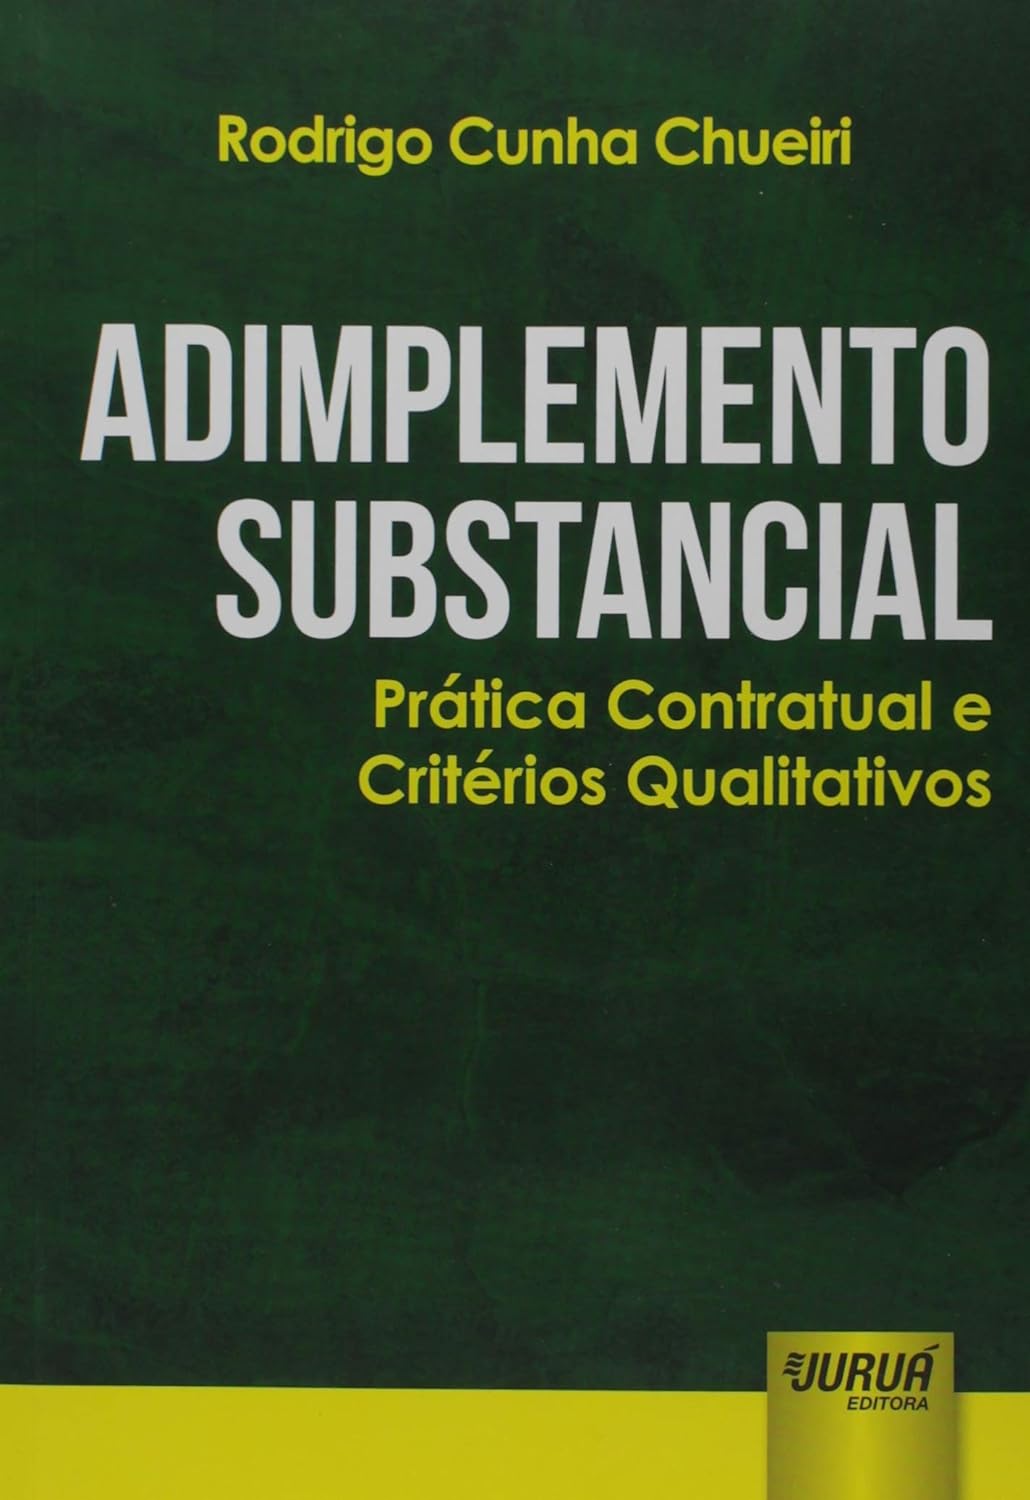 Rodrigo Cunha Chueiri: Adimplemento Substancial (Paperback, Português language, 2017, Juruá)